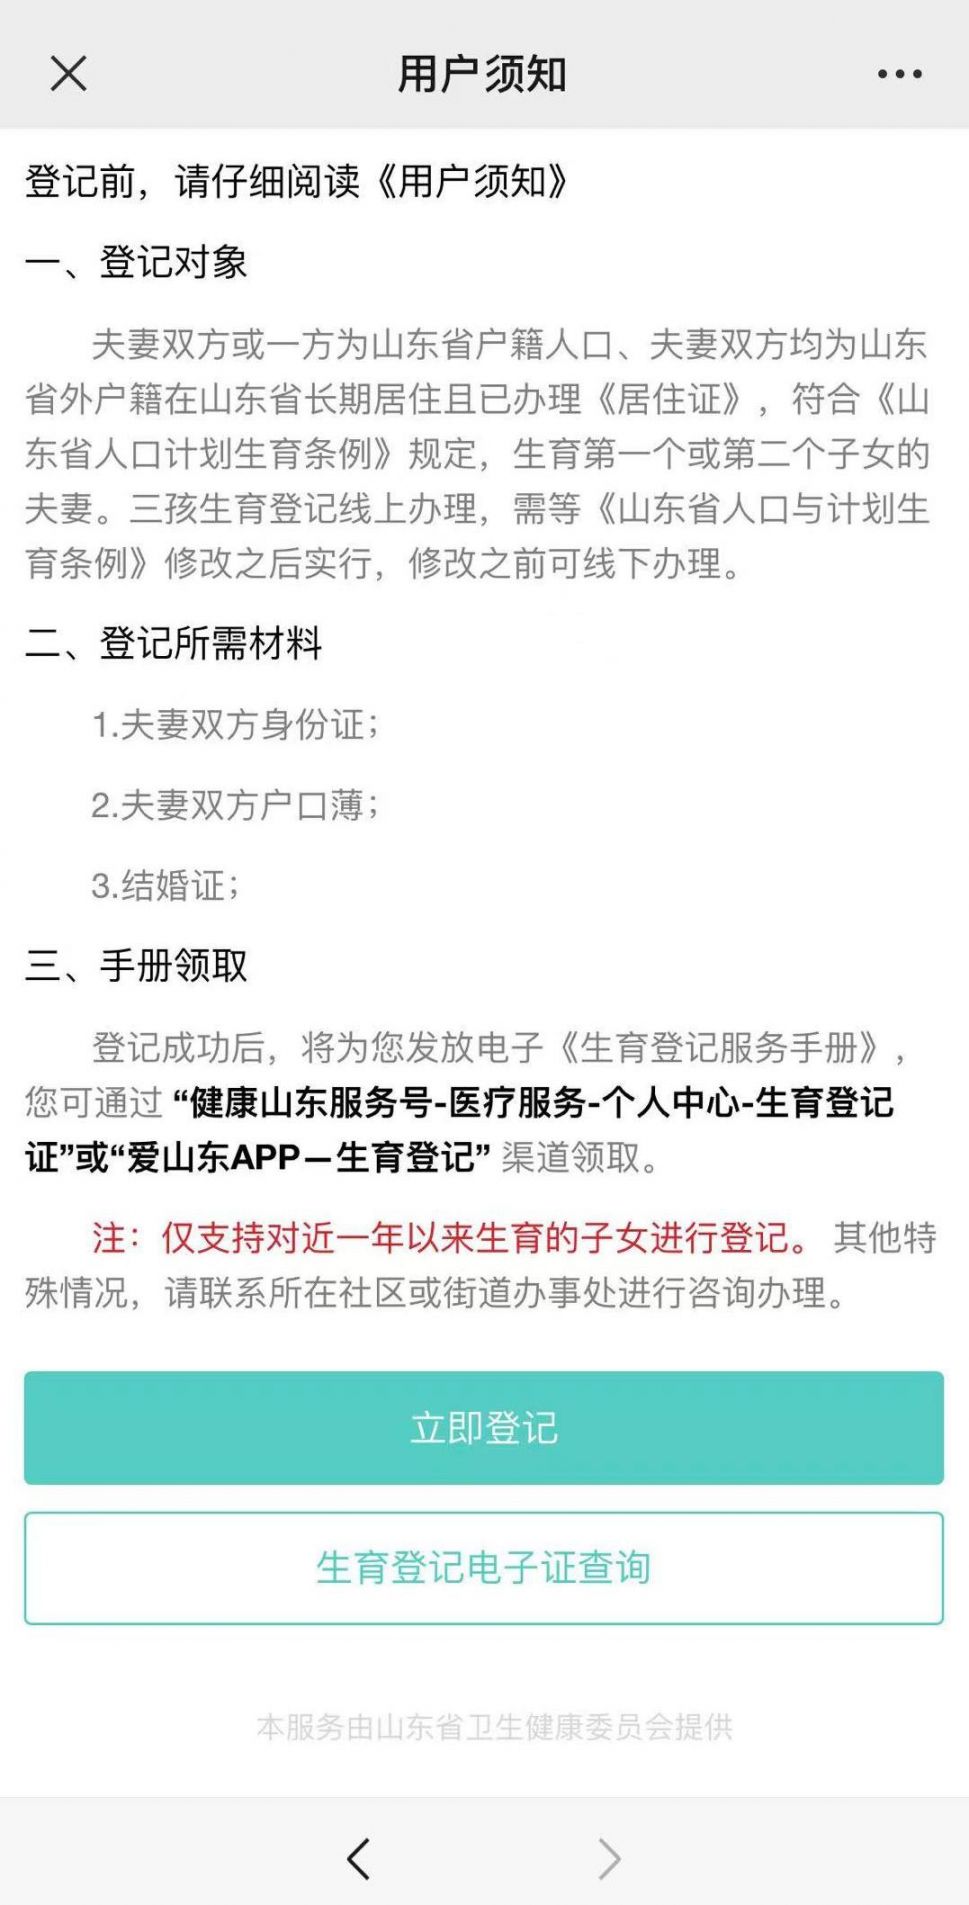 青岛市生育登记网上办理流程